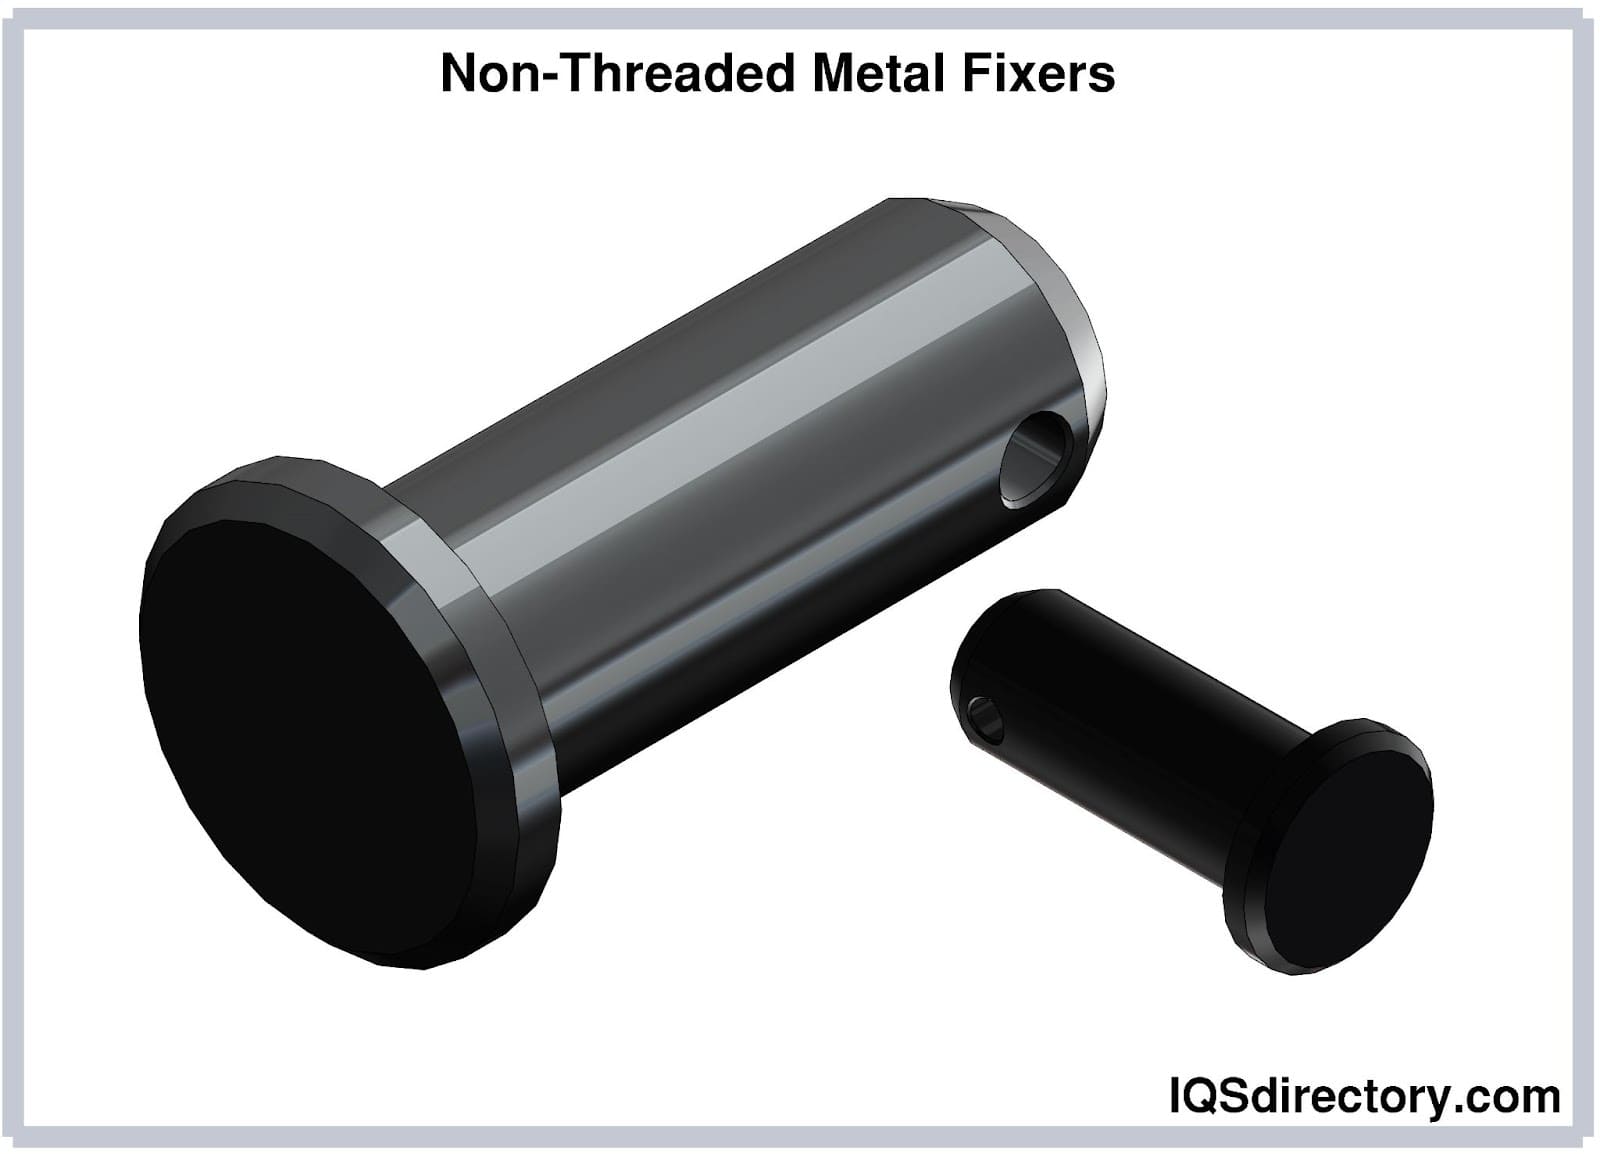 Non-Threaded Metal Fixers